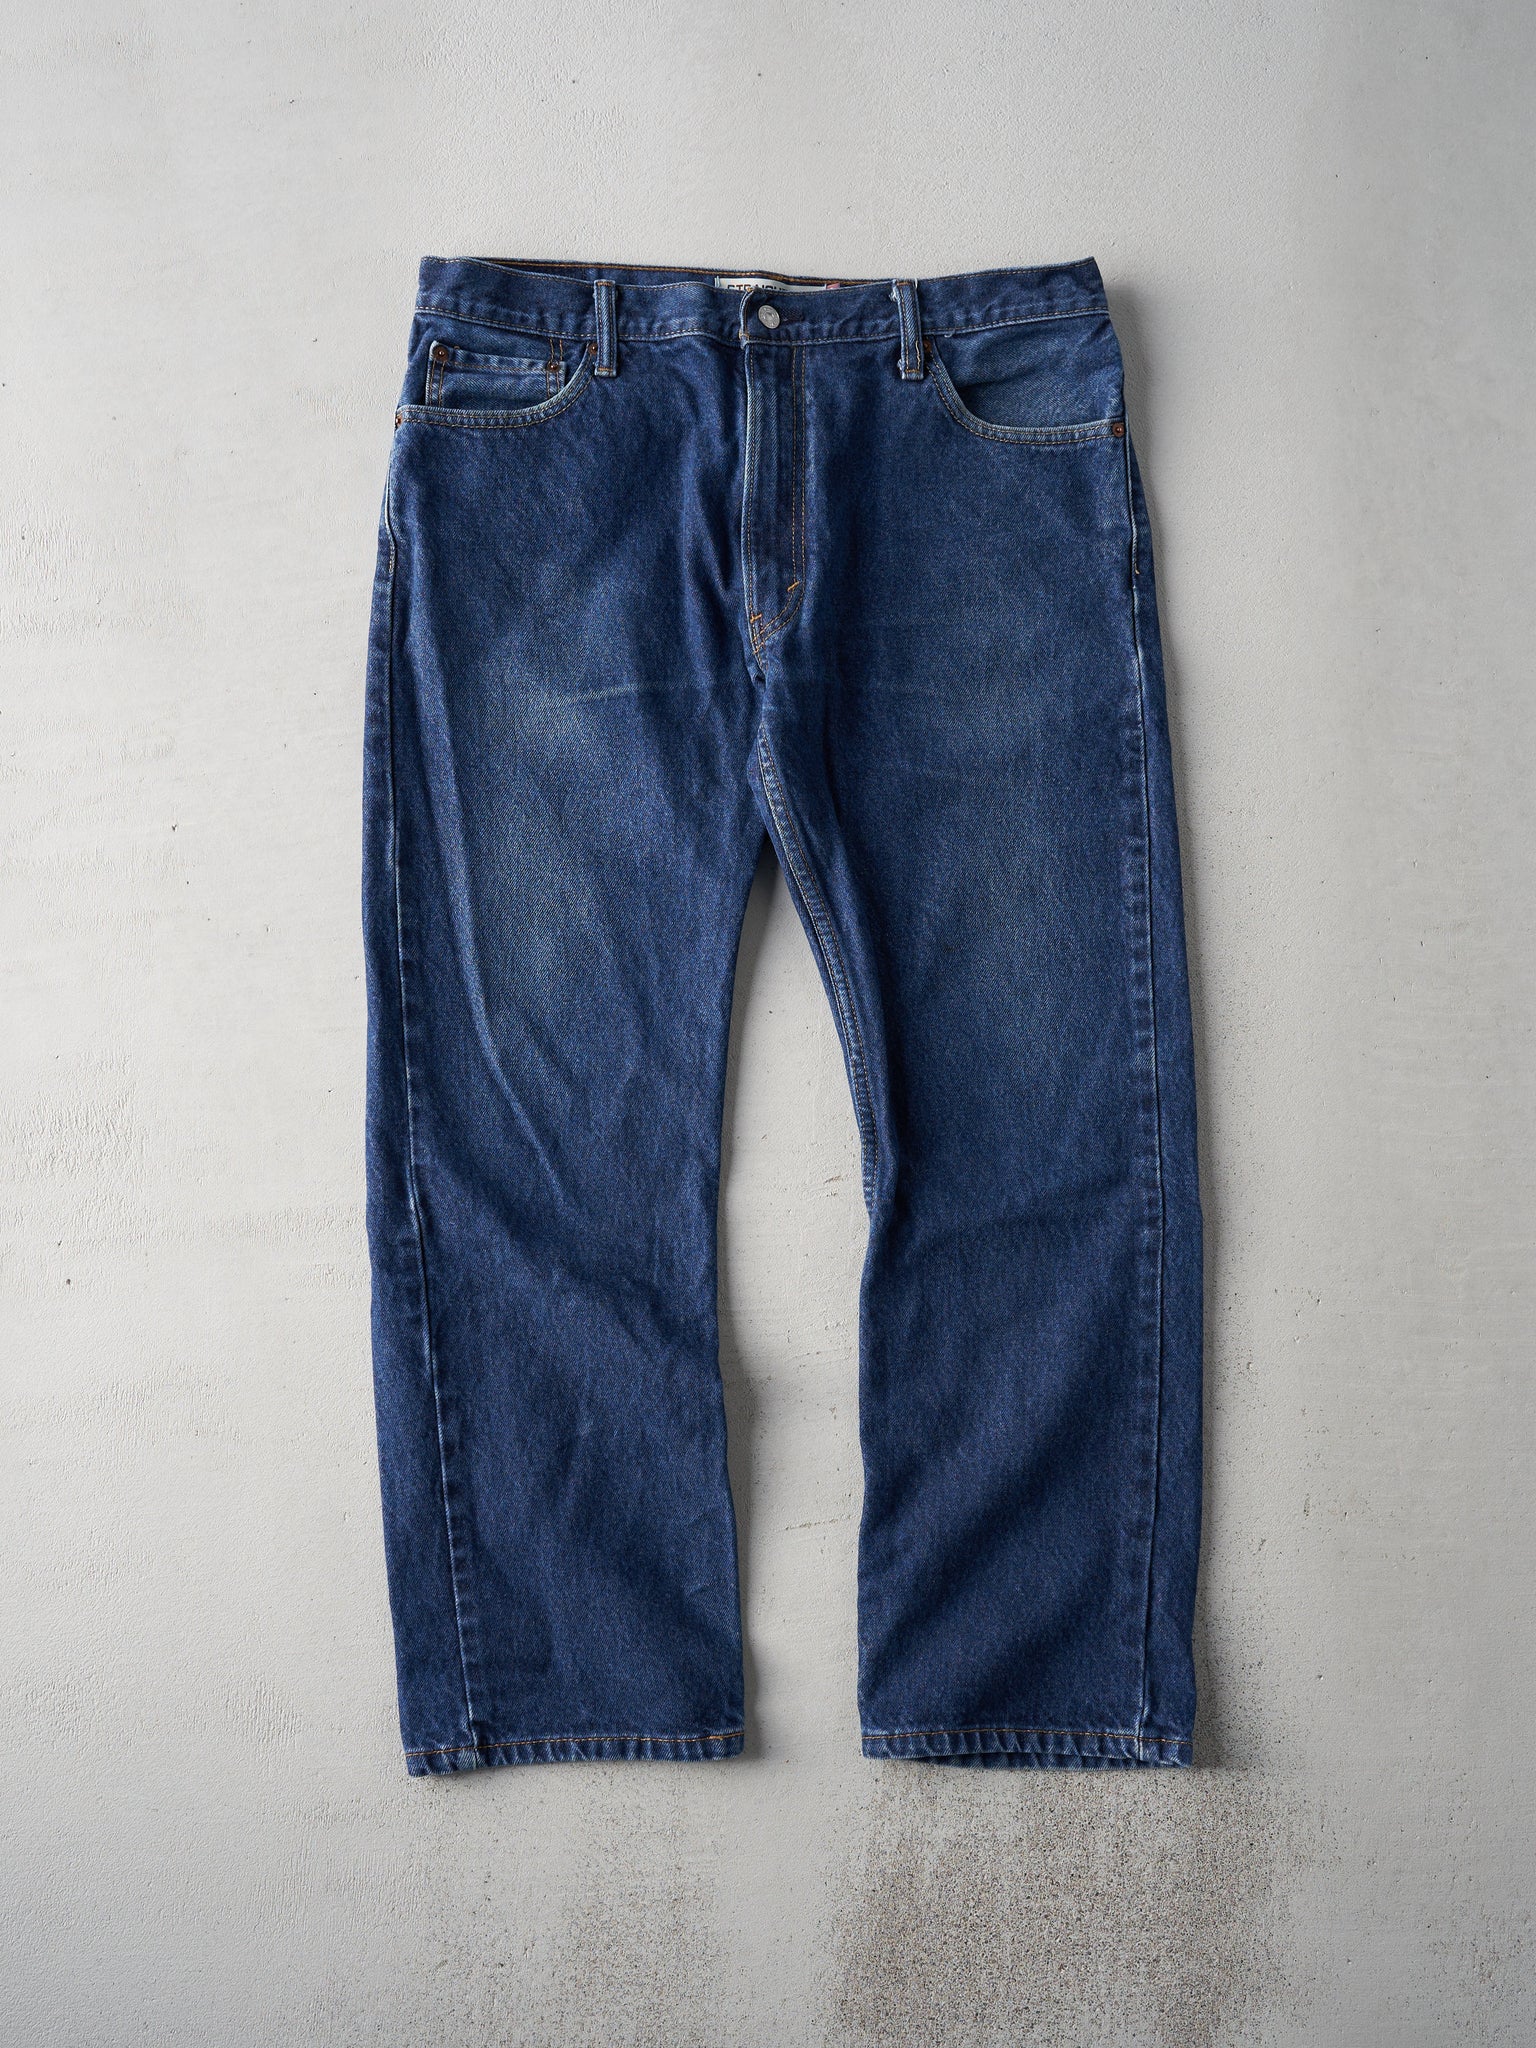 Vintage Dark Wash Levis 505 Straight Fit Jeans (36x29)